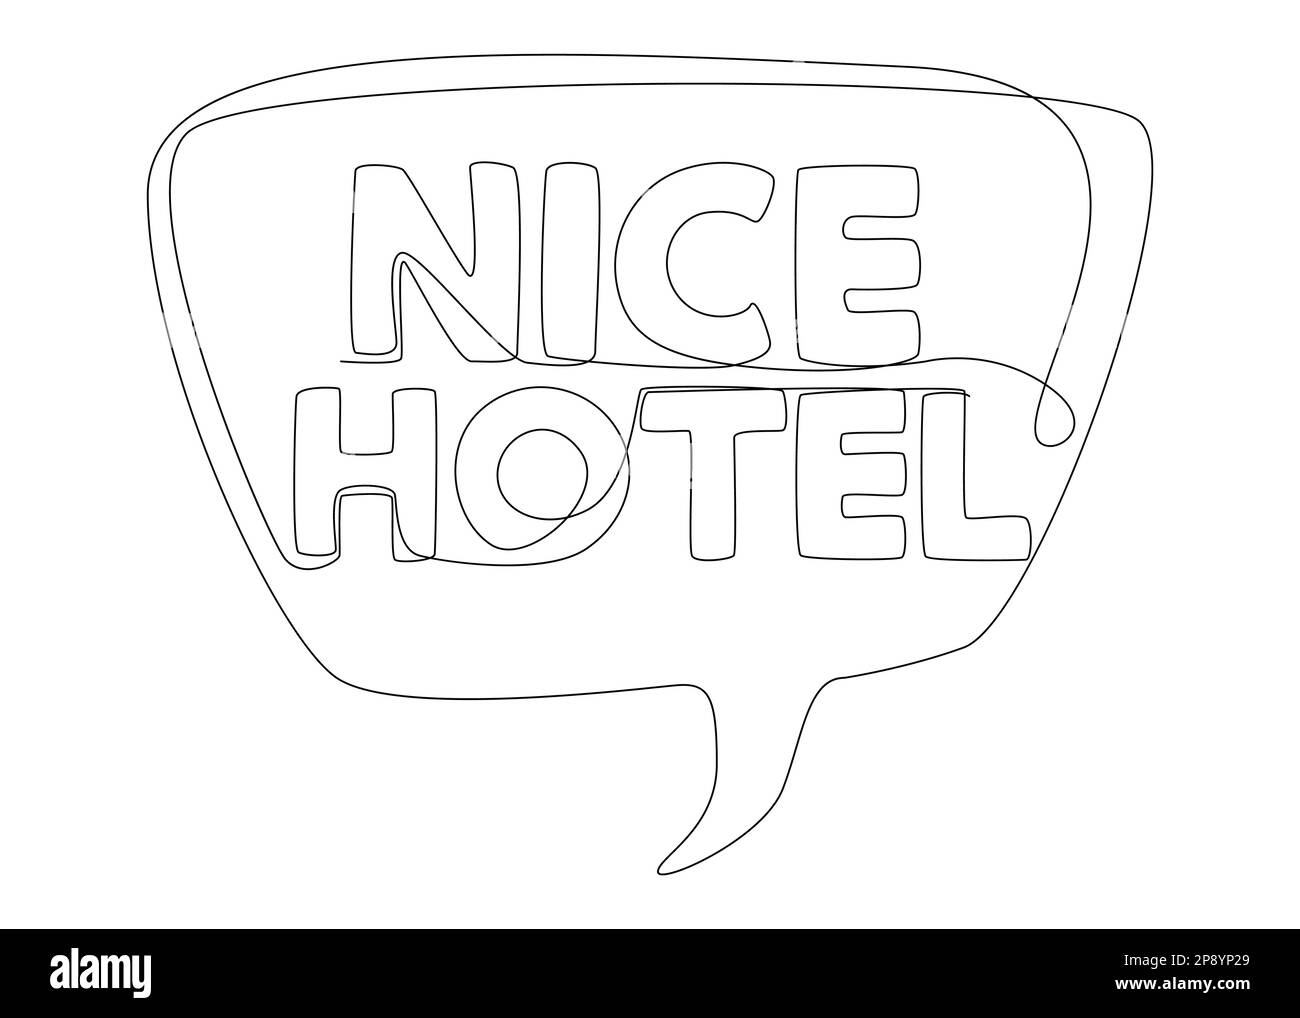 Une ligne continue de bulle de parole avec le texte de Nice Hotel. Concept de vecteur d'illustration à trait fin. Dessin de contour idées créatives. Illustration de Vecteur